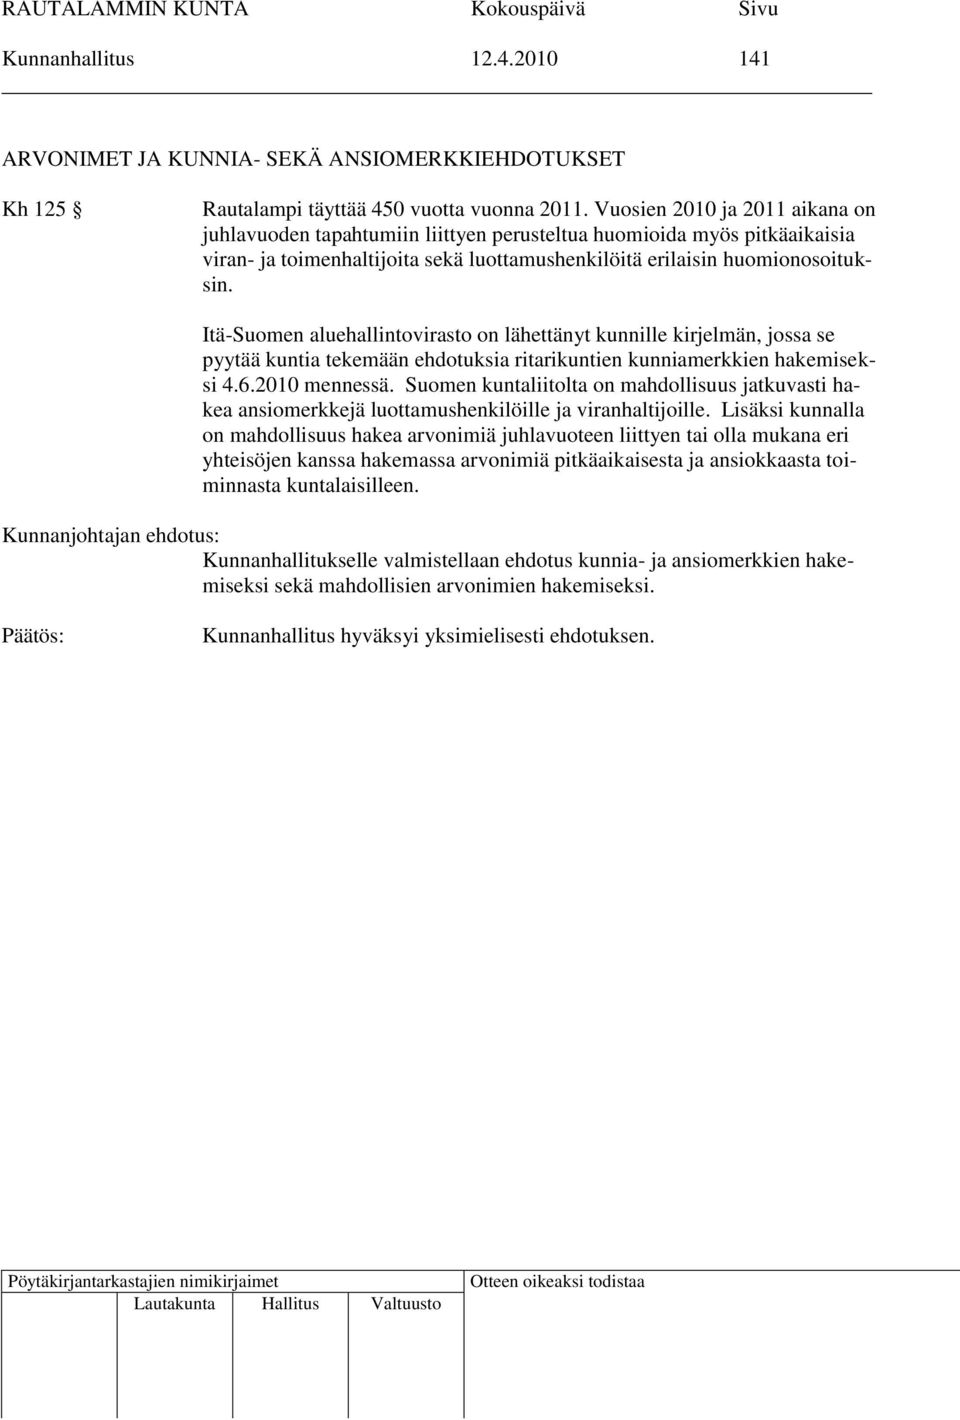 Itä-Suomen aluehallintovirasto on lähettänyt kunnille kirjelmän, jossa se pyytää kuntia tekemään ehdotuksia ritarikuntien kunniamerkkien hakemiseksi 4.6.2010 mennessä.